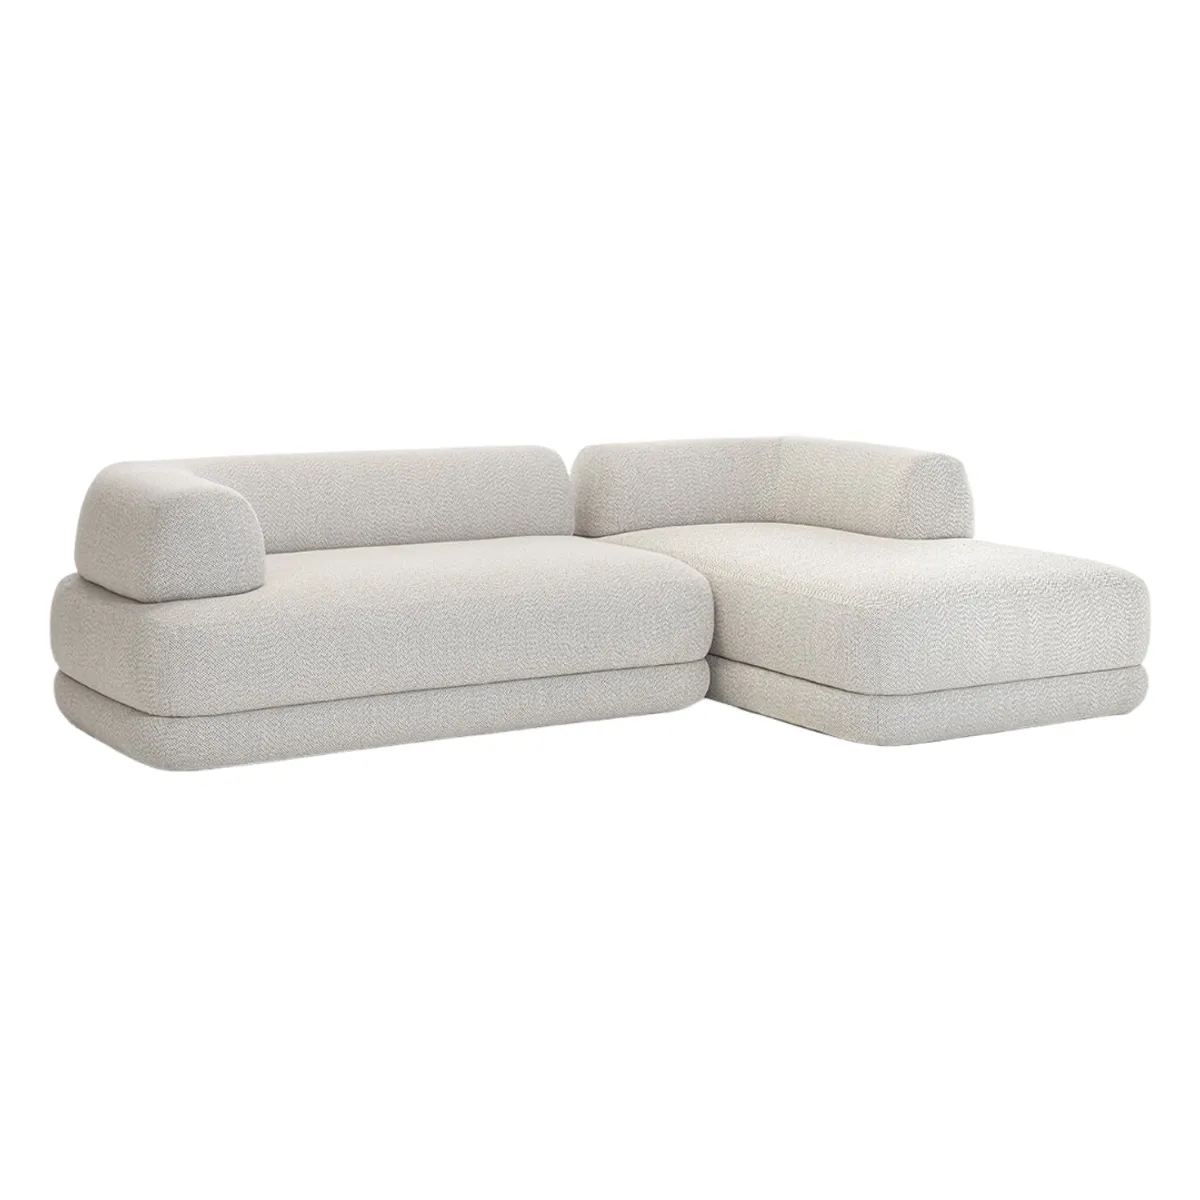 Putellas sofa 6